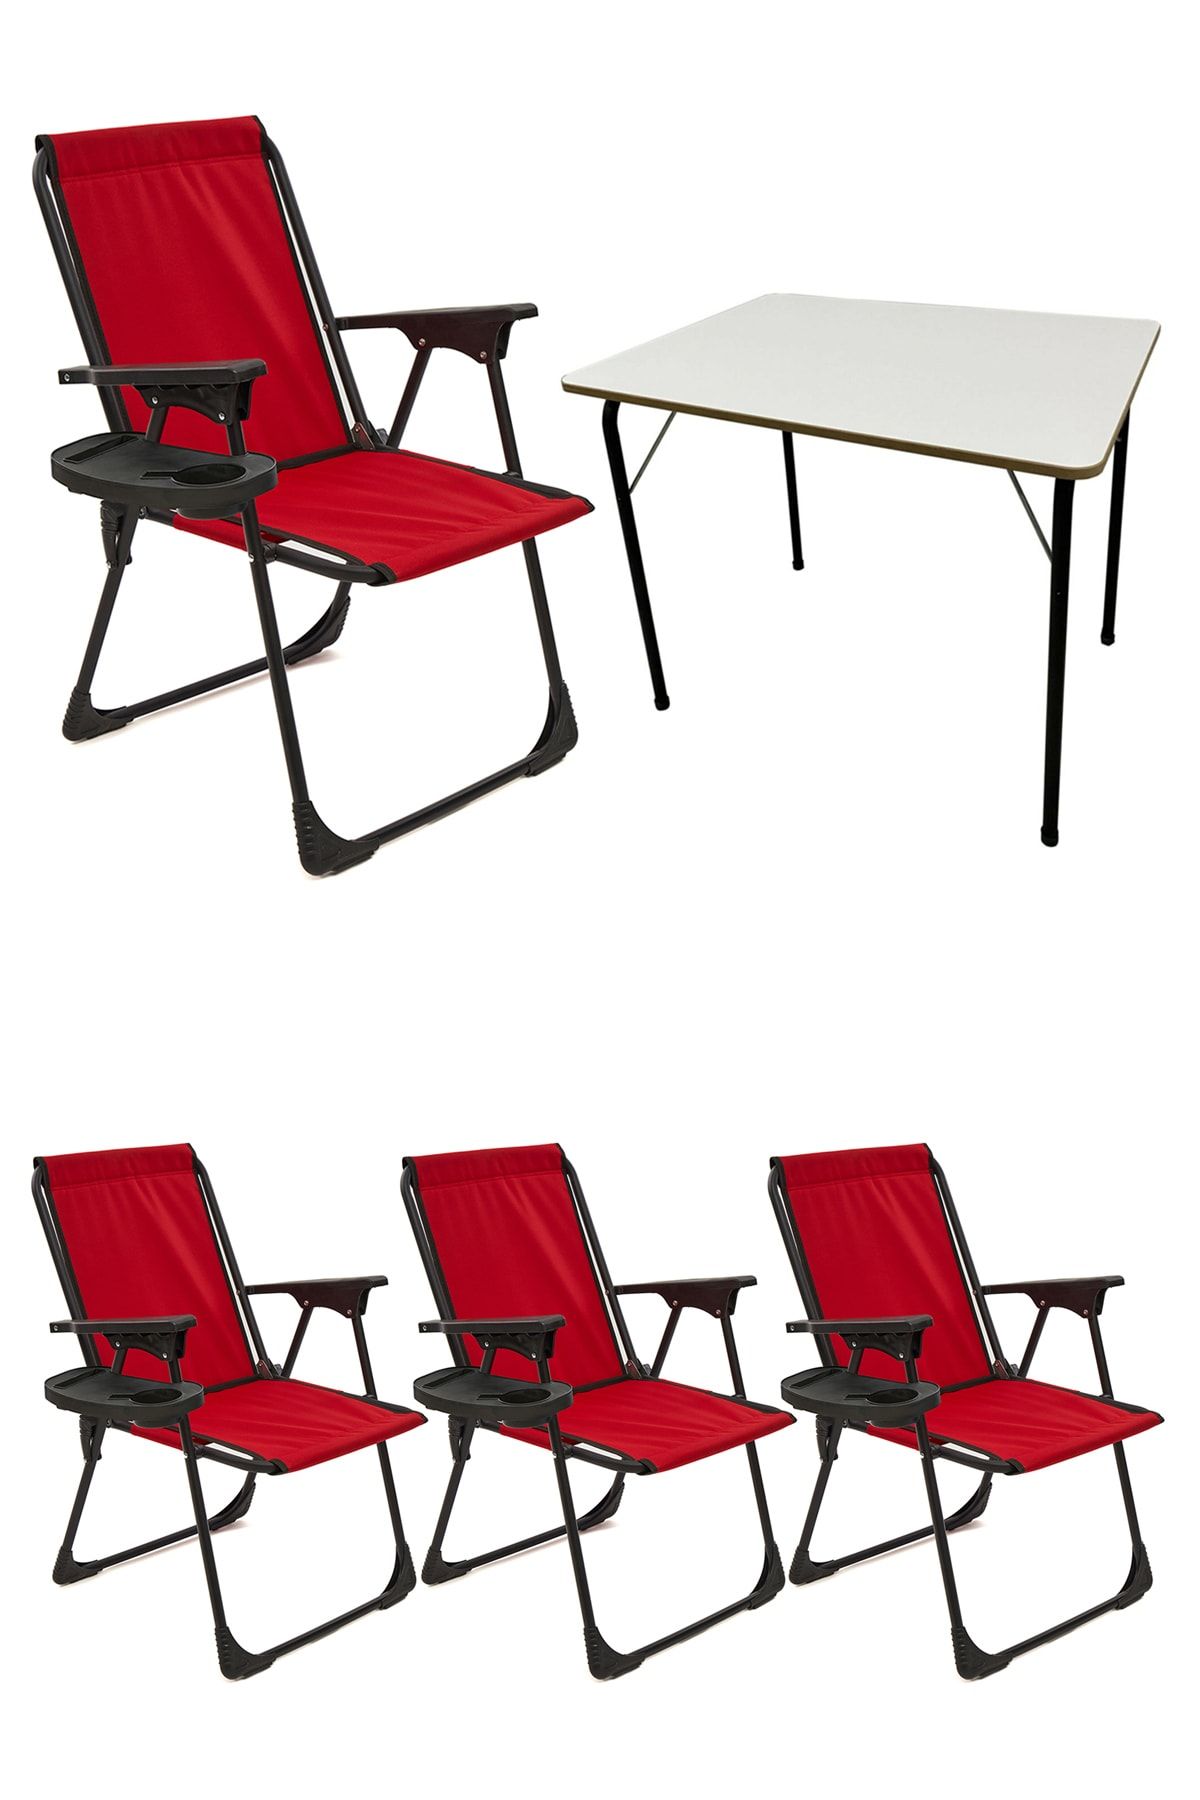 moniev Natura 4 Adet Kamp Sandalyesi Katlanır Piknik Sandalye Oval Bardaklıklı Kırmızı Katlanır Mdf Masa